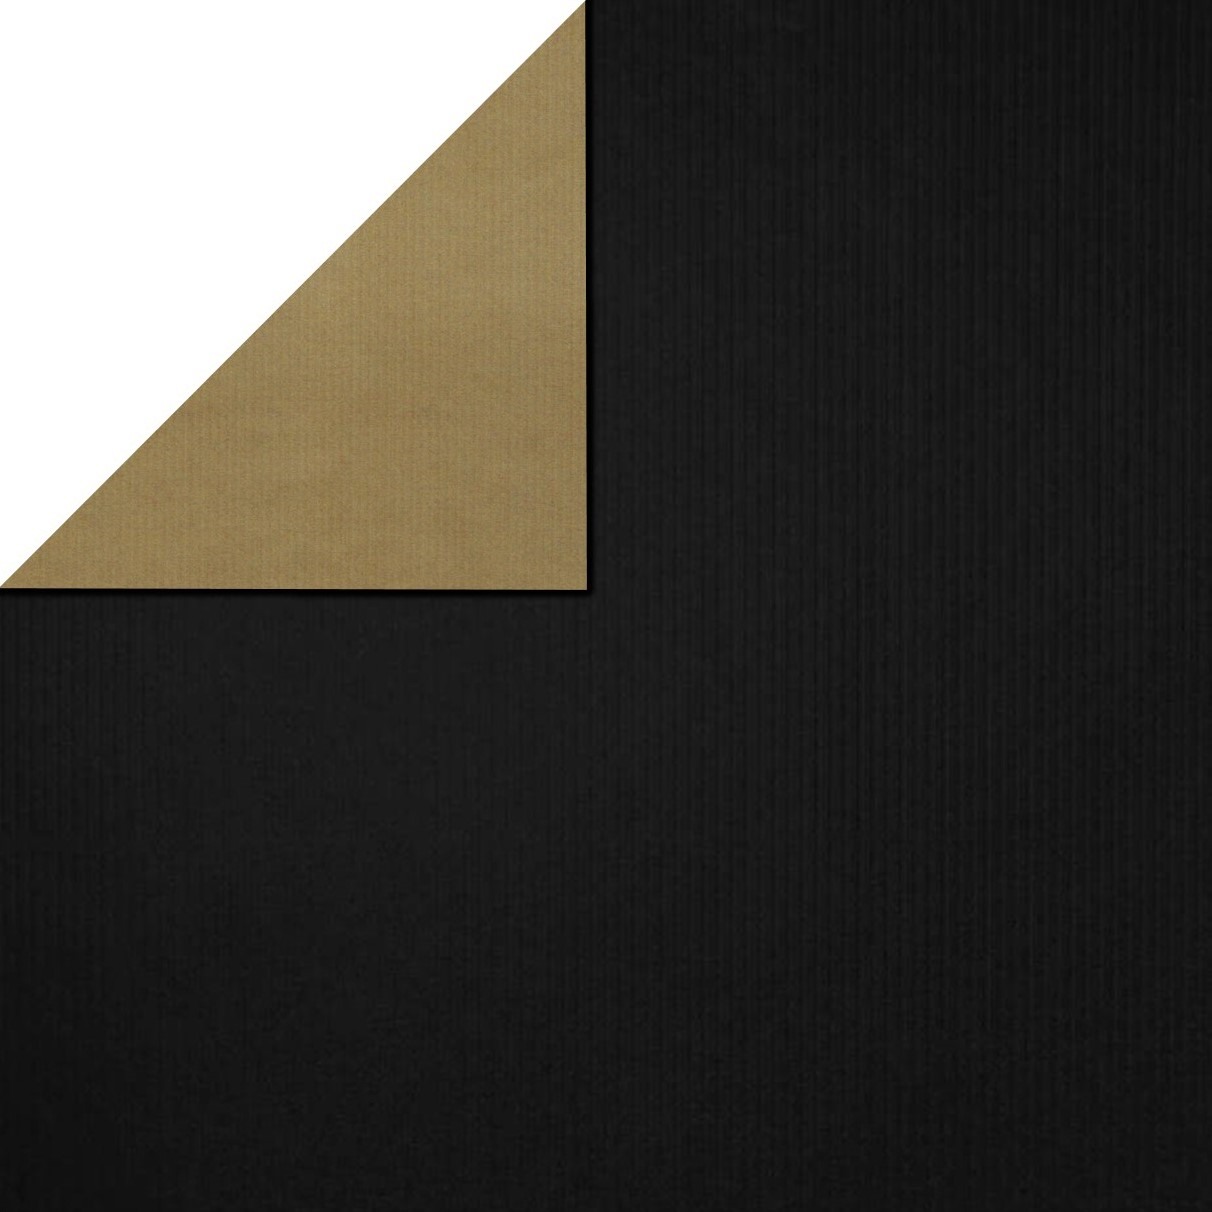 Inpakpapier voorzijde uni zwart, achterzijde uni goud met strepen persing, rollen van 50 meter, kies minimaal 4 artikelen in een assortimentsdoos.
 